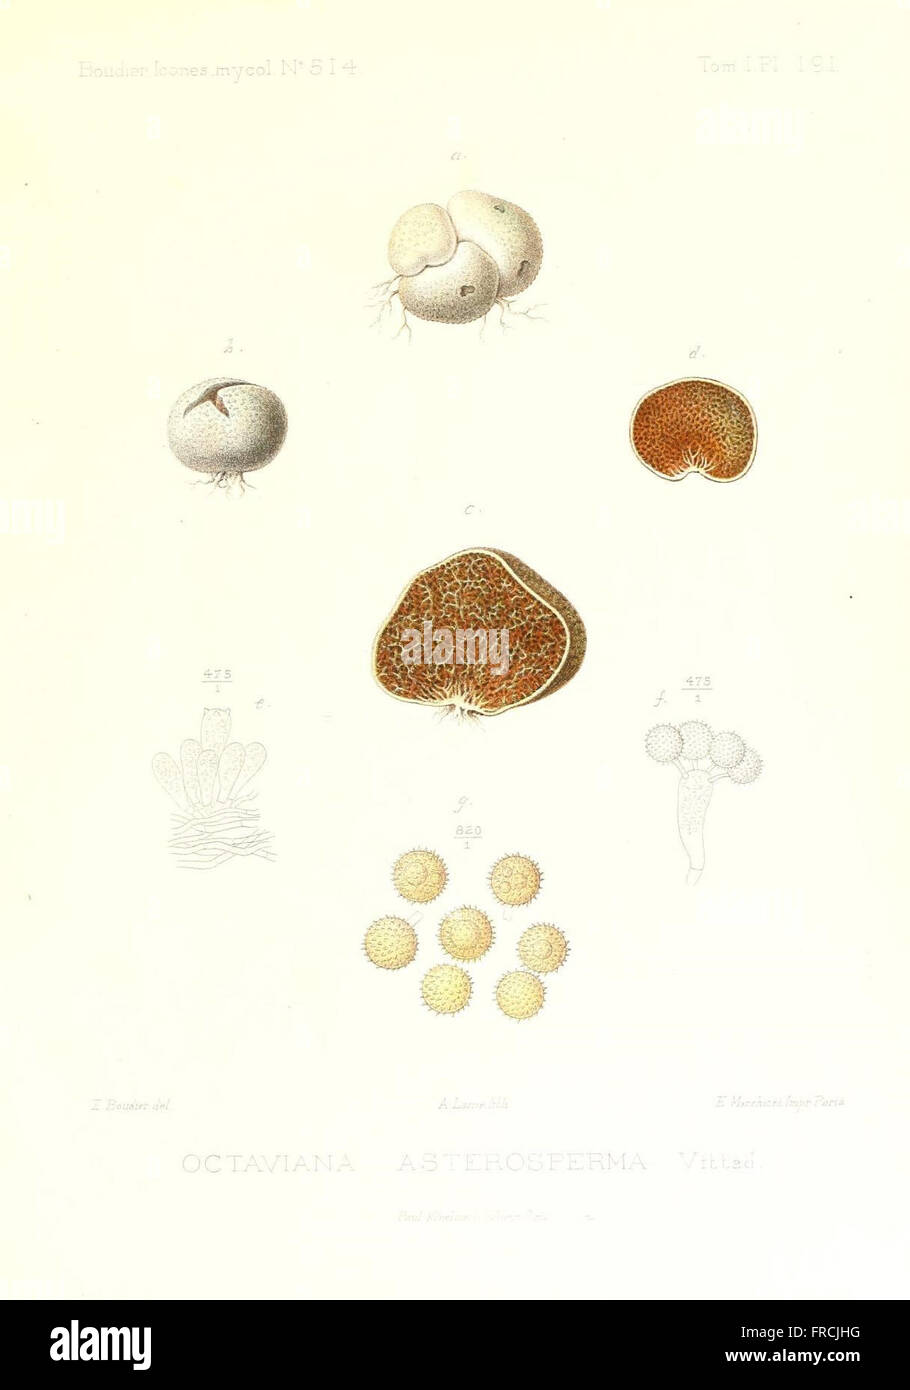 Icones mycologicC3A6, ou Iconographie des champignons de France principalement Discomycetes (Pl. 191) Stock Photo